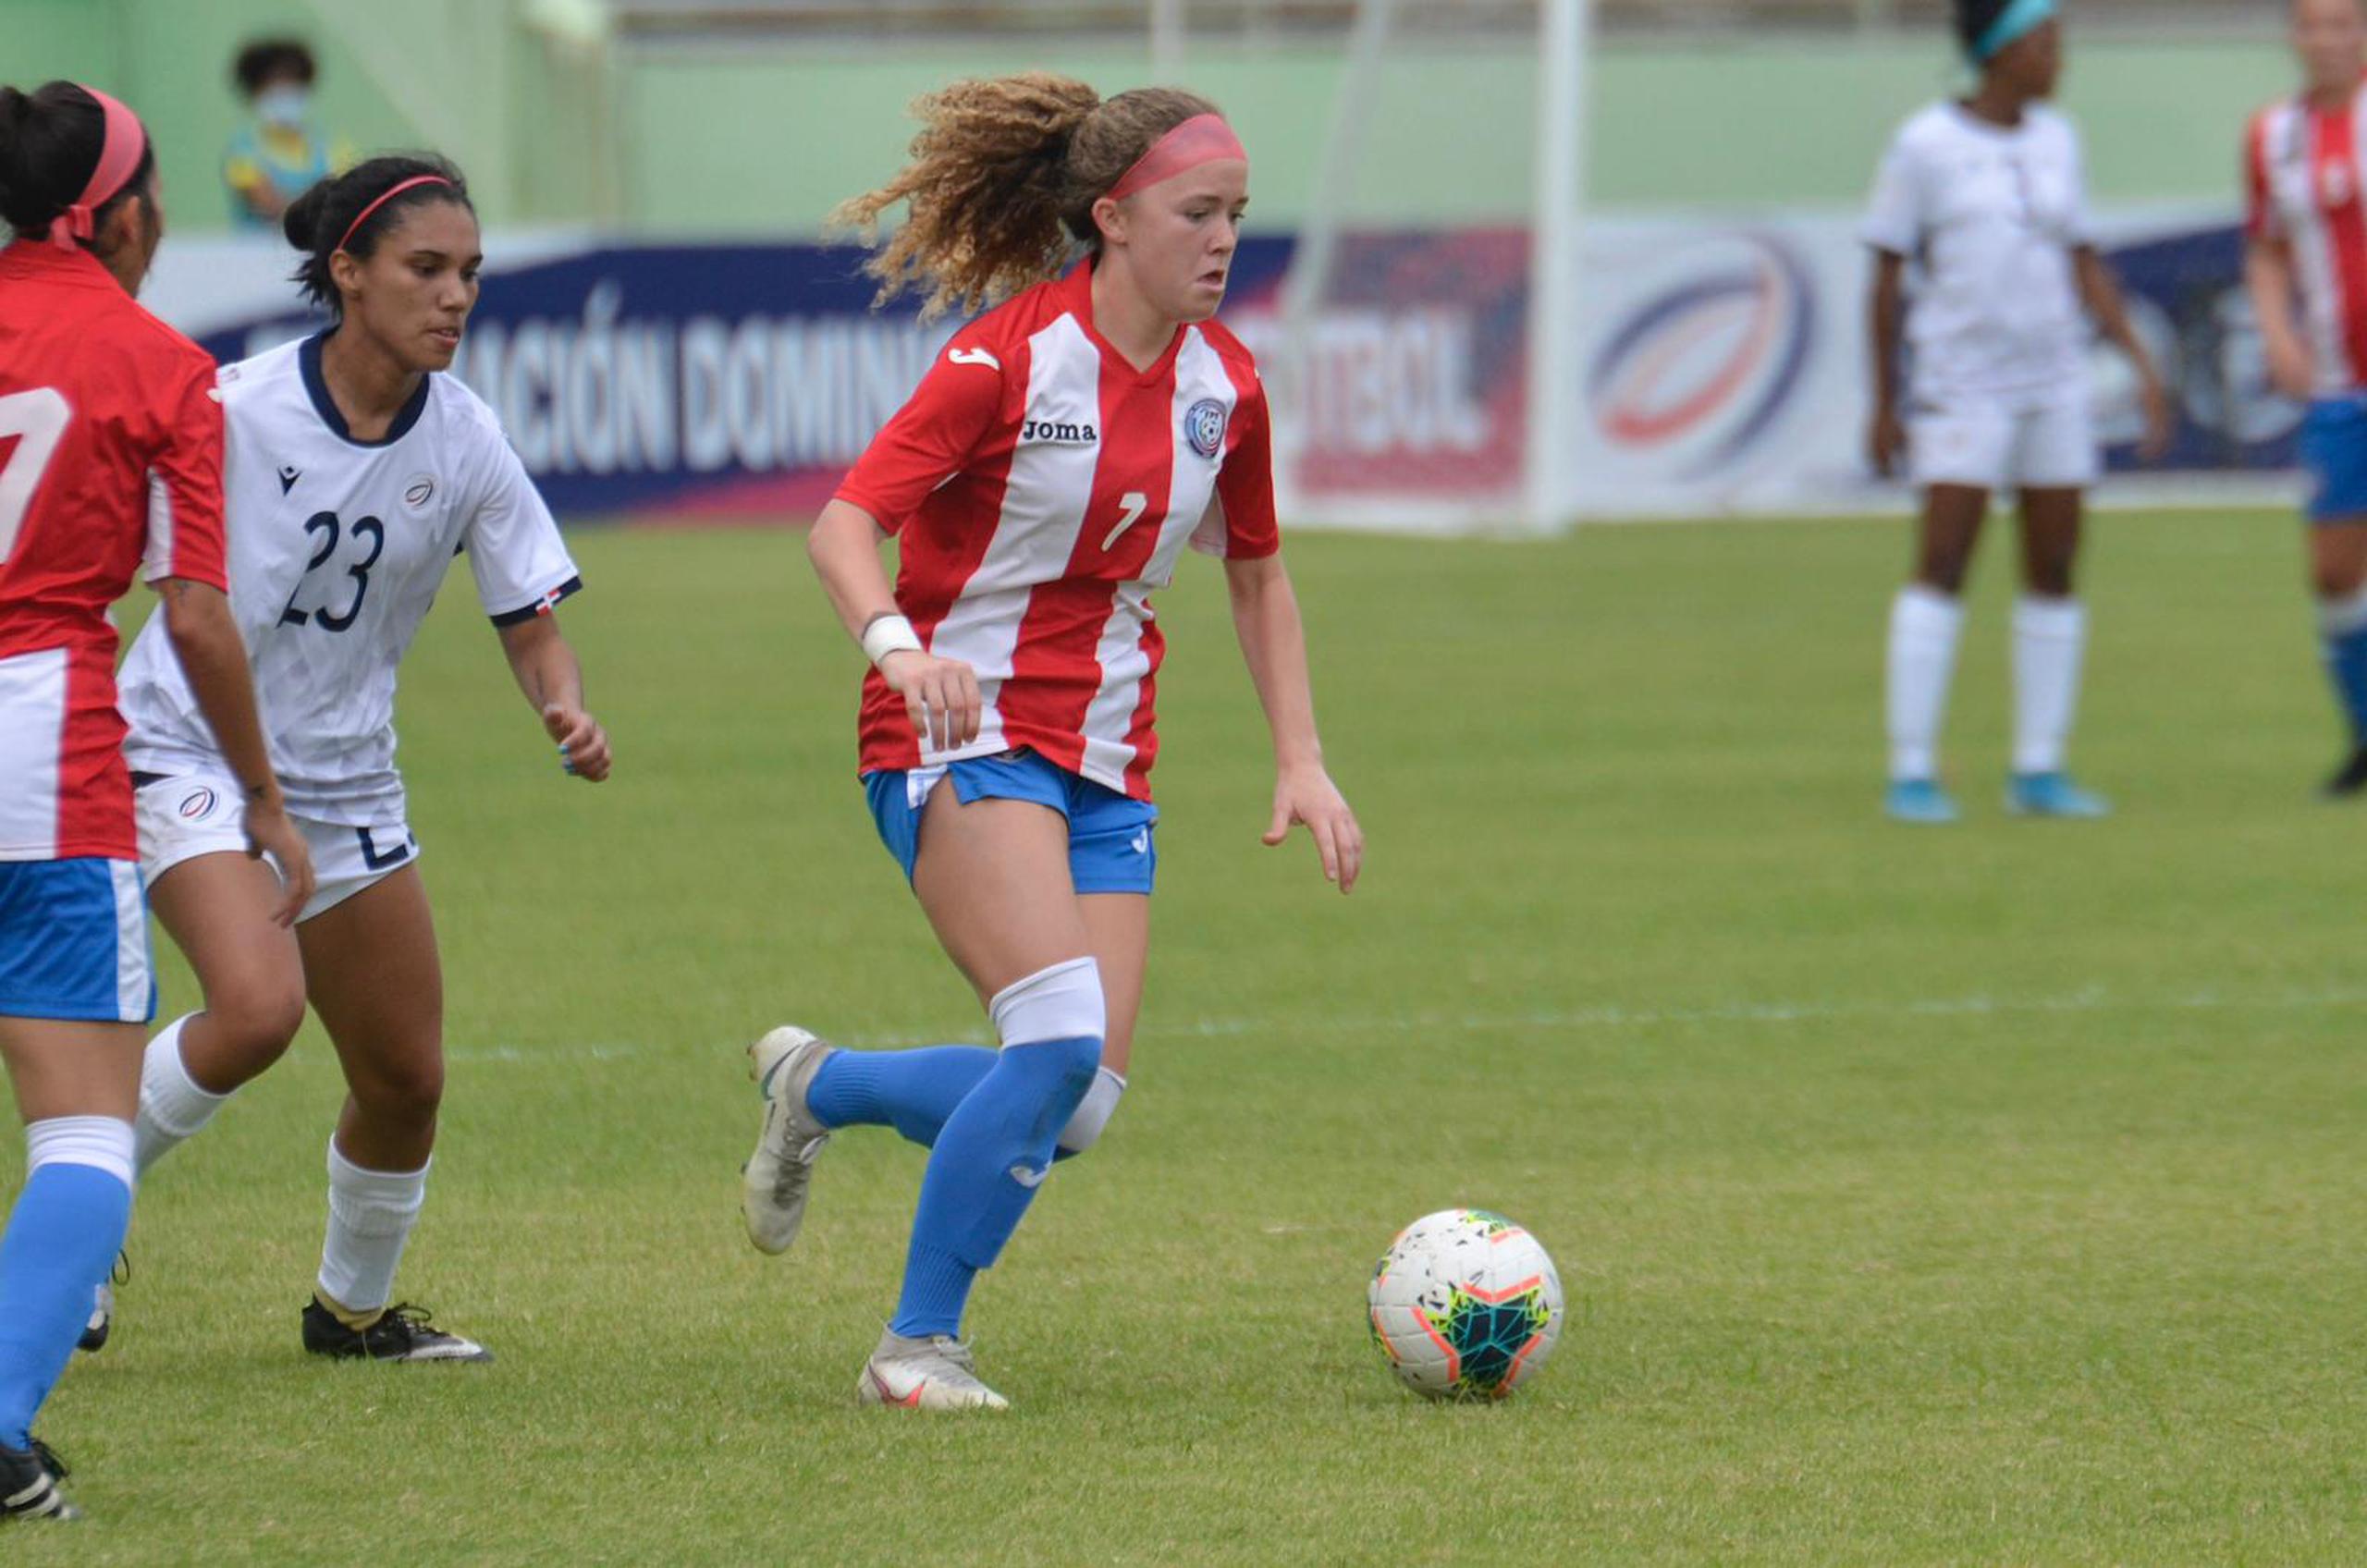 La Selección Nacional Femenina de fútbol tenía partidos amistosos programados para los días 8 y 12 de abril en Uruguay.